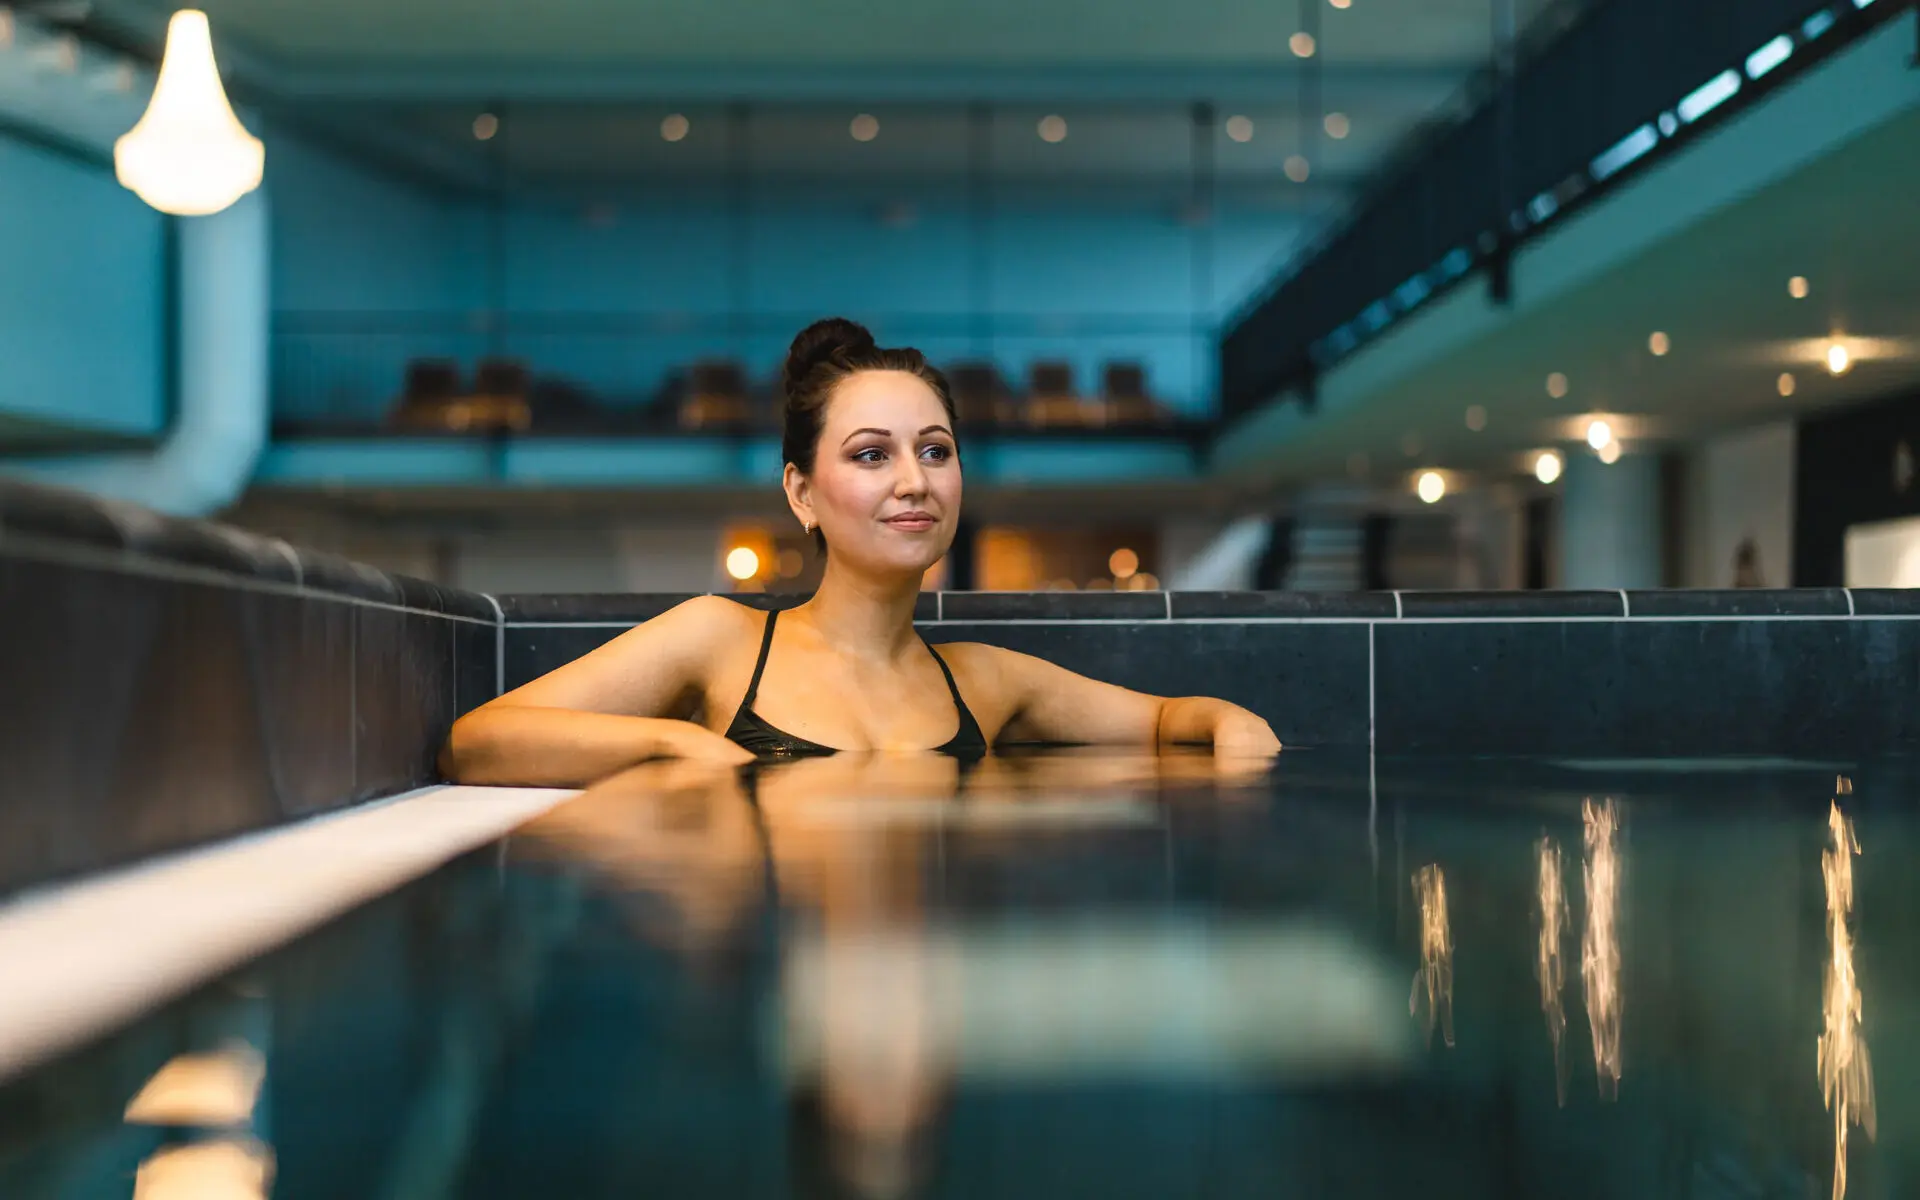 Eine dunkelhaarige Frau entspannt in einem eckigen Schwimmbecken, die Ellenbogen auf dem Beckenrand aufgestützt. Im Hintergrund ist abgedunkelt und leicht verschwommen der Schwimmbereich zu erkennen.